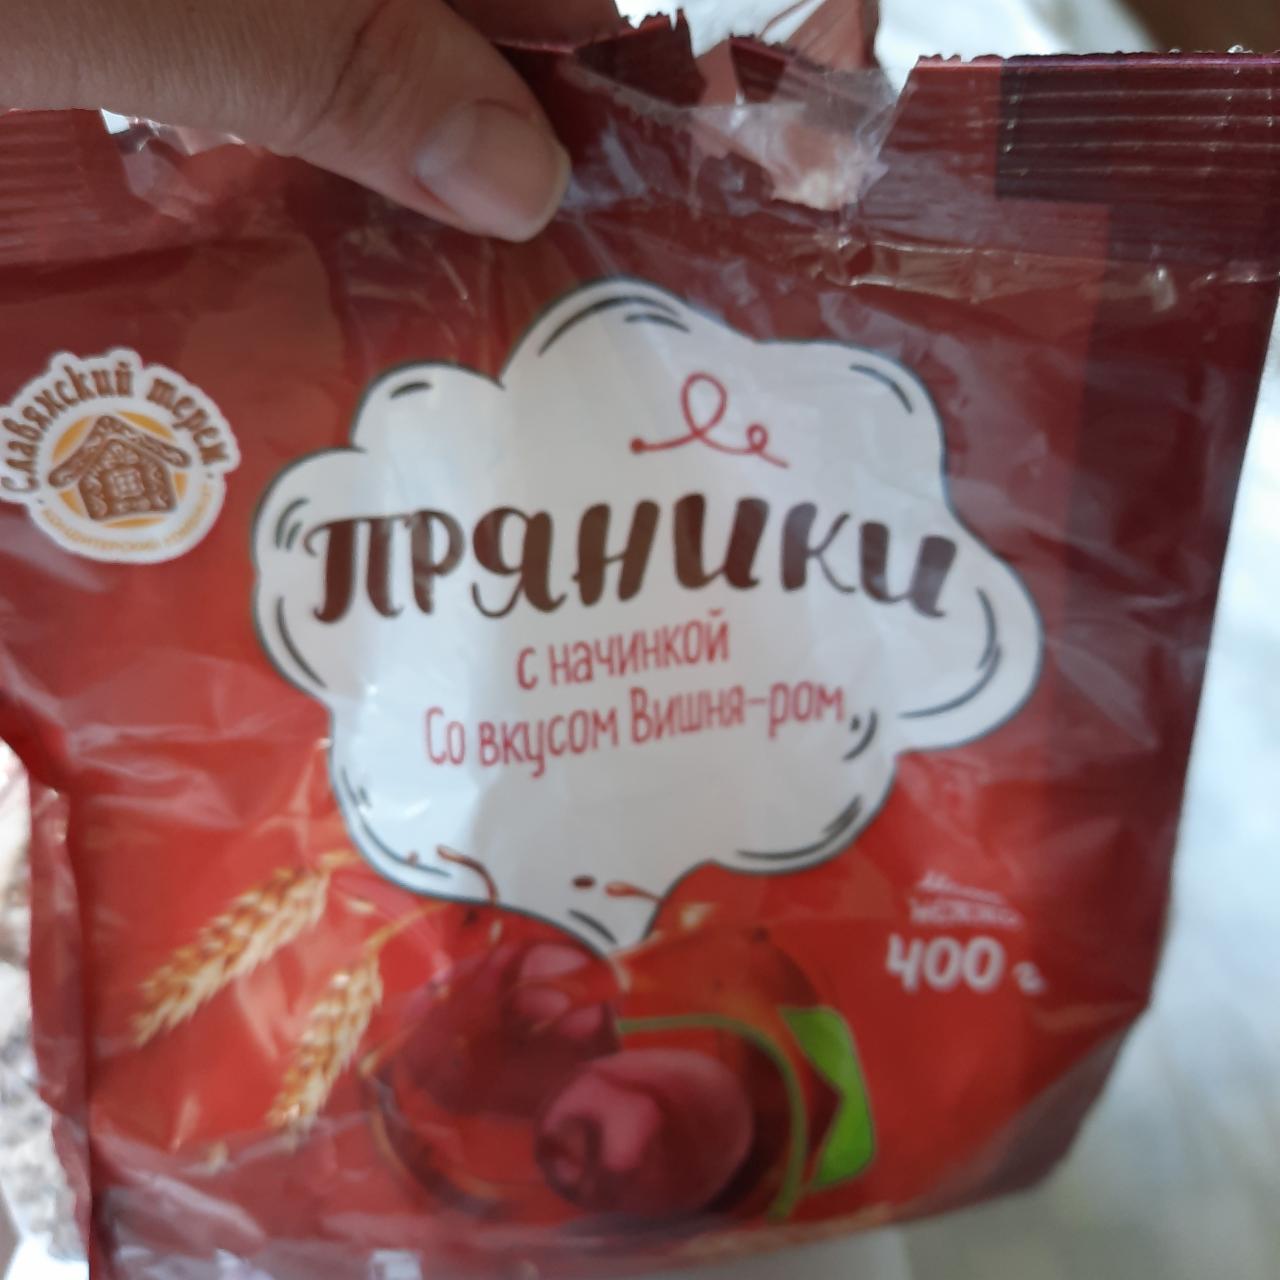 Фото - Пряники со вкусом вишня-ром Славянский терем